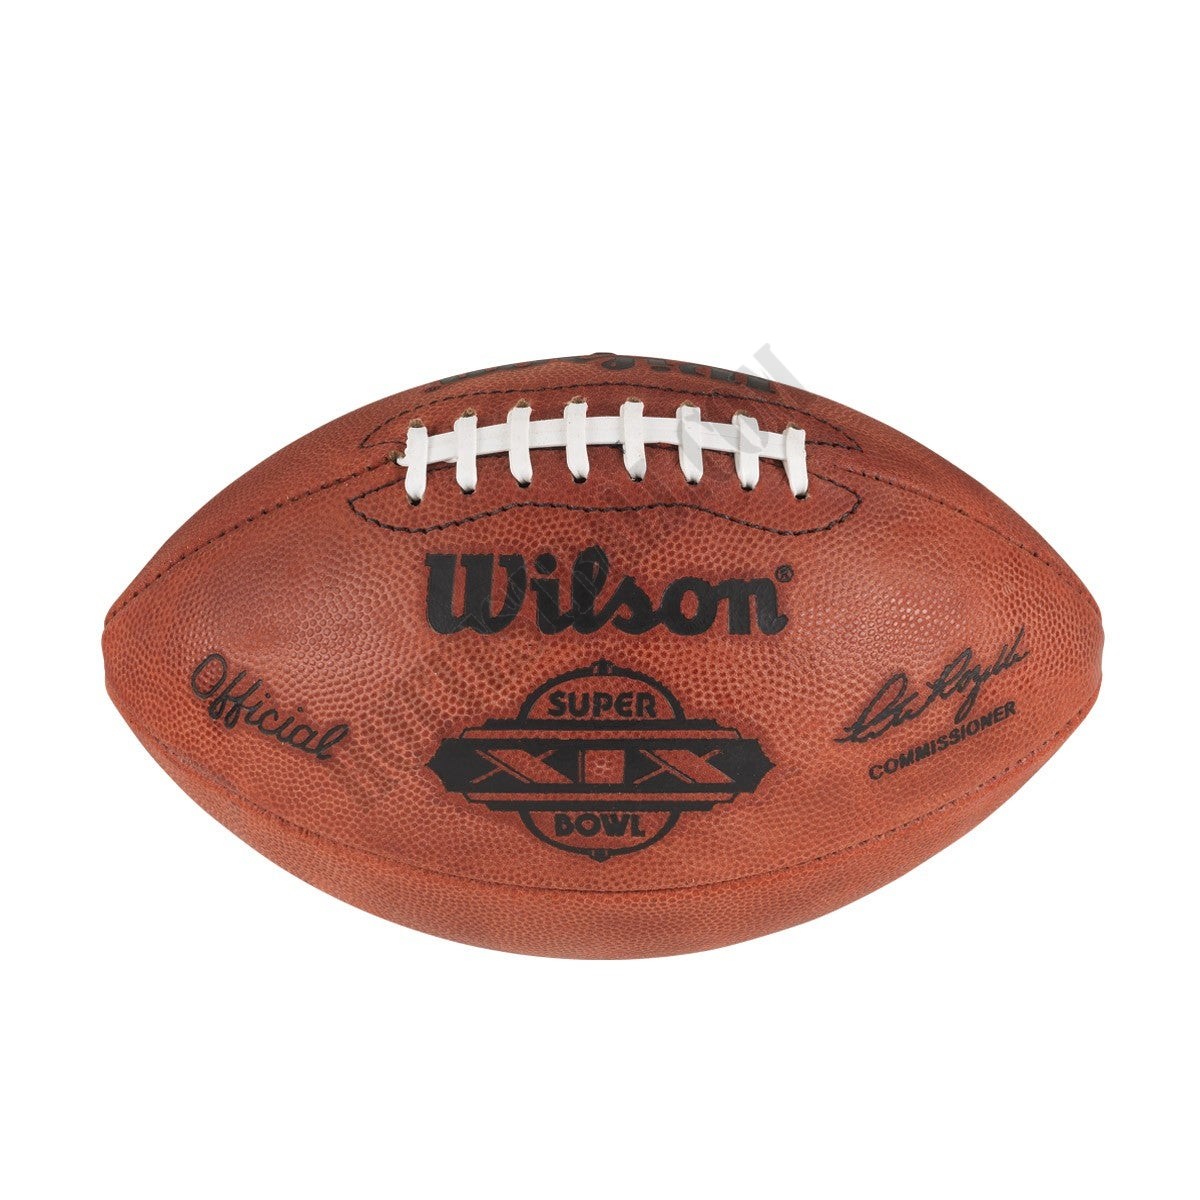 Super Bowl XIX Game Football - San Francisco 49ers ● Wilson Promotions - Super Bowl XIX Game Football - San Francisco 49ers ● Wilson Promotions